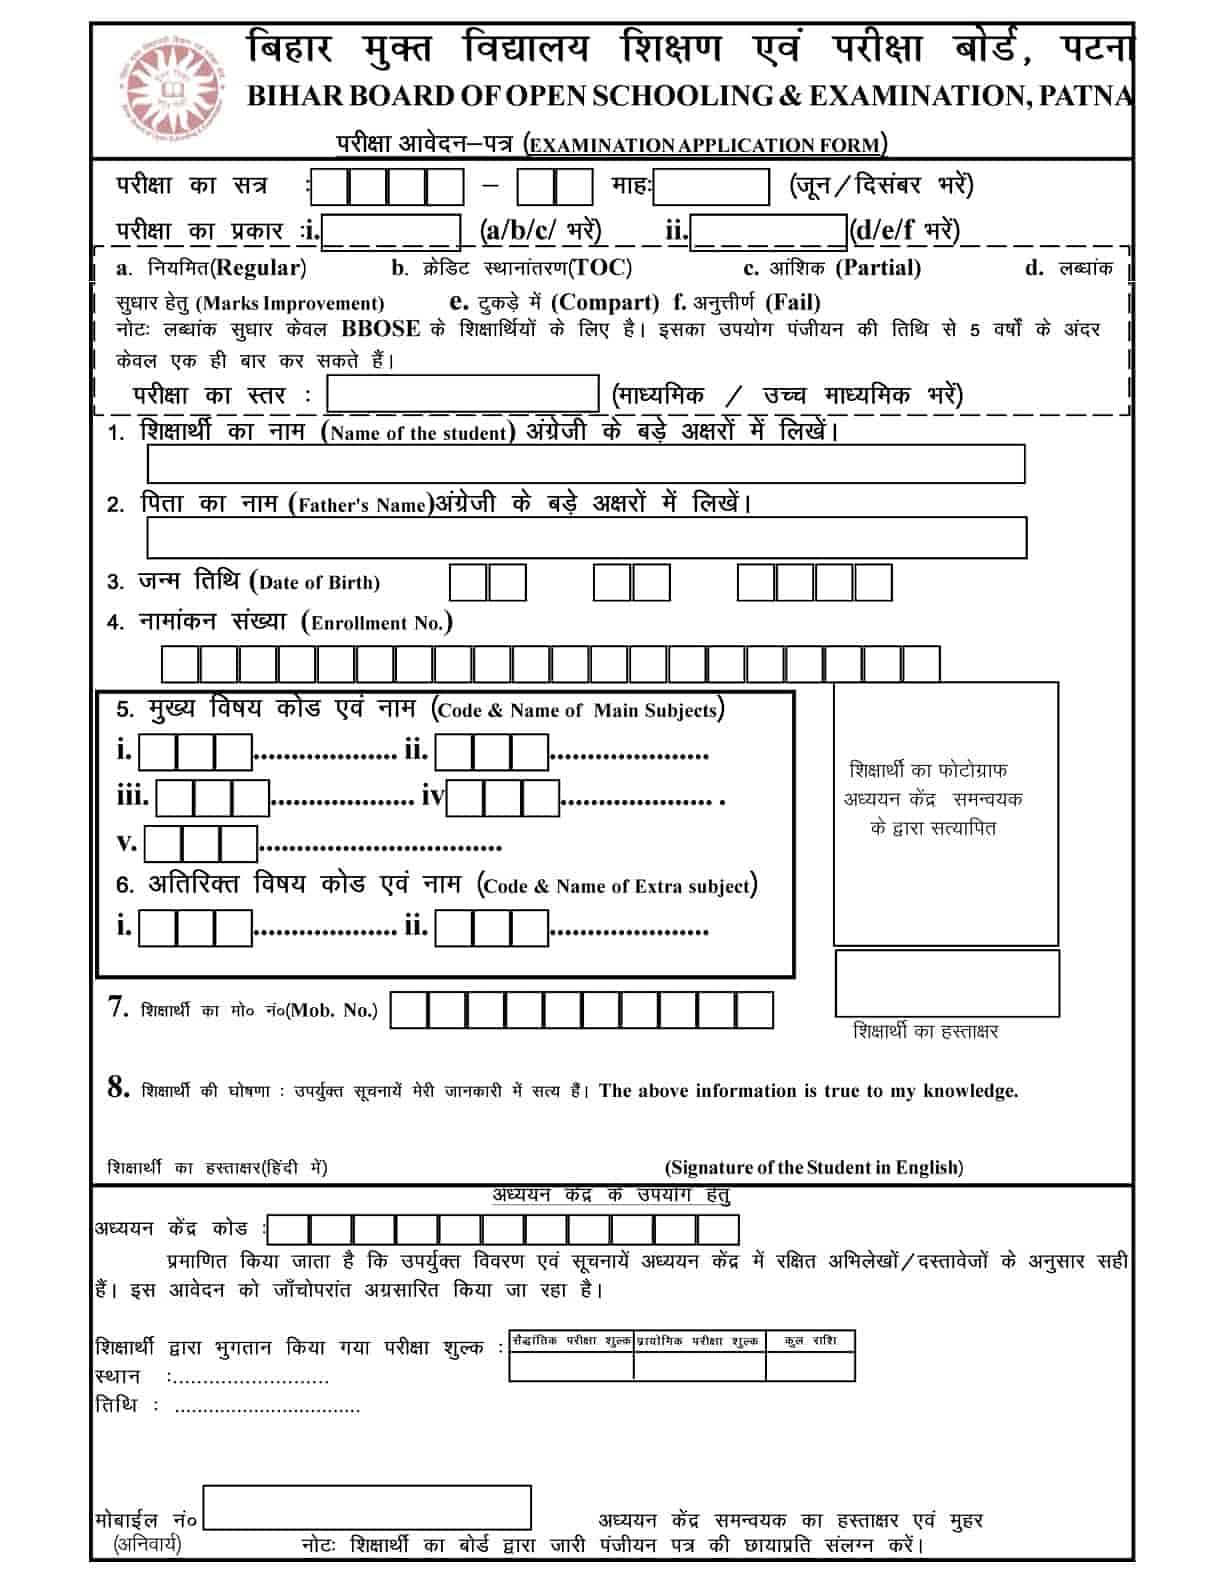 BBOSE Registration form 2022